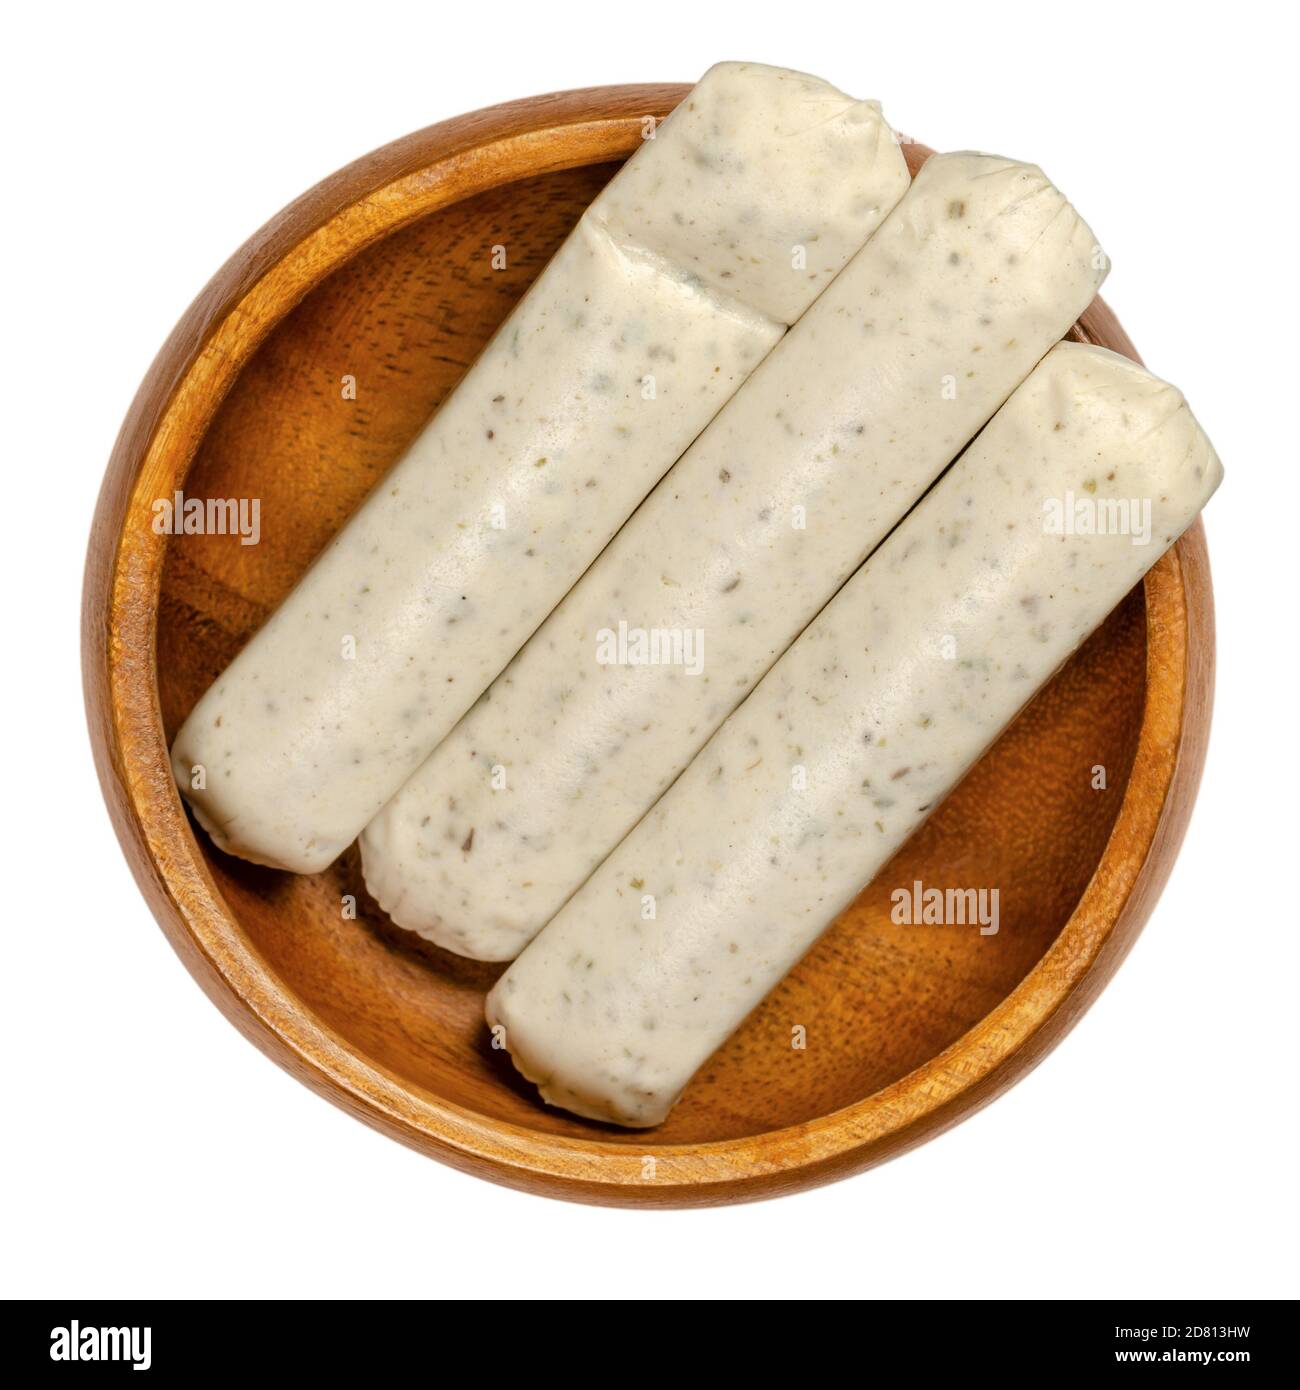 Saucisses végétariennes au barbecue dans un bol en bois. Saucisses blanches sans viande à base d'œufs et de protéines de lait en tant que substituts de viande, avec herbes et épices. Banque D'Images